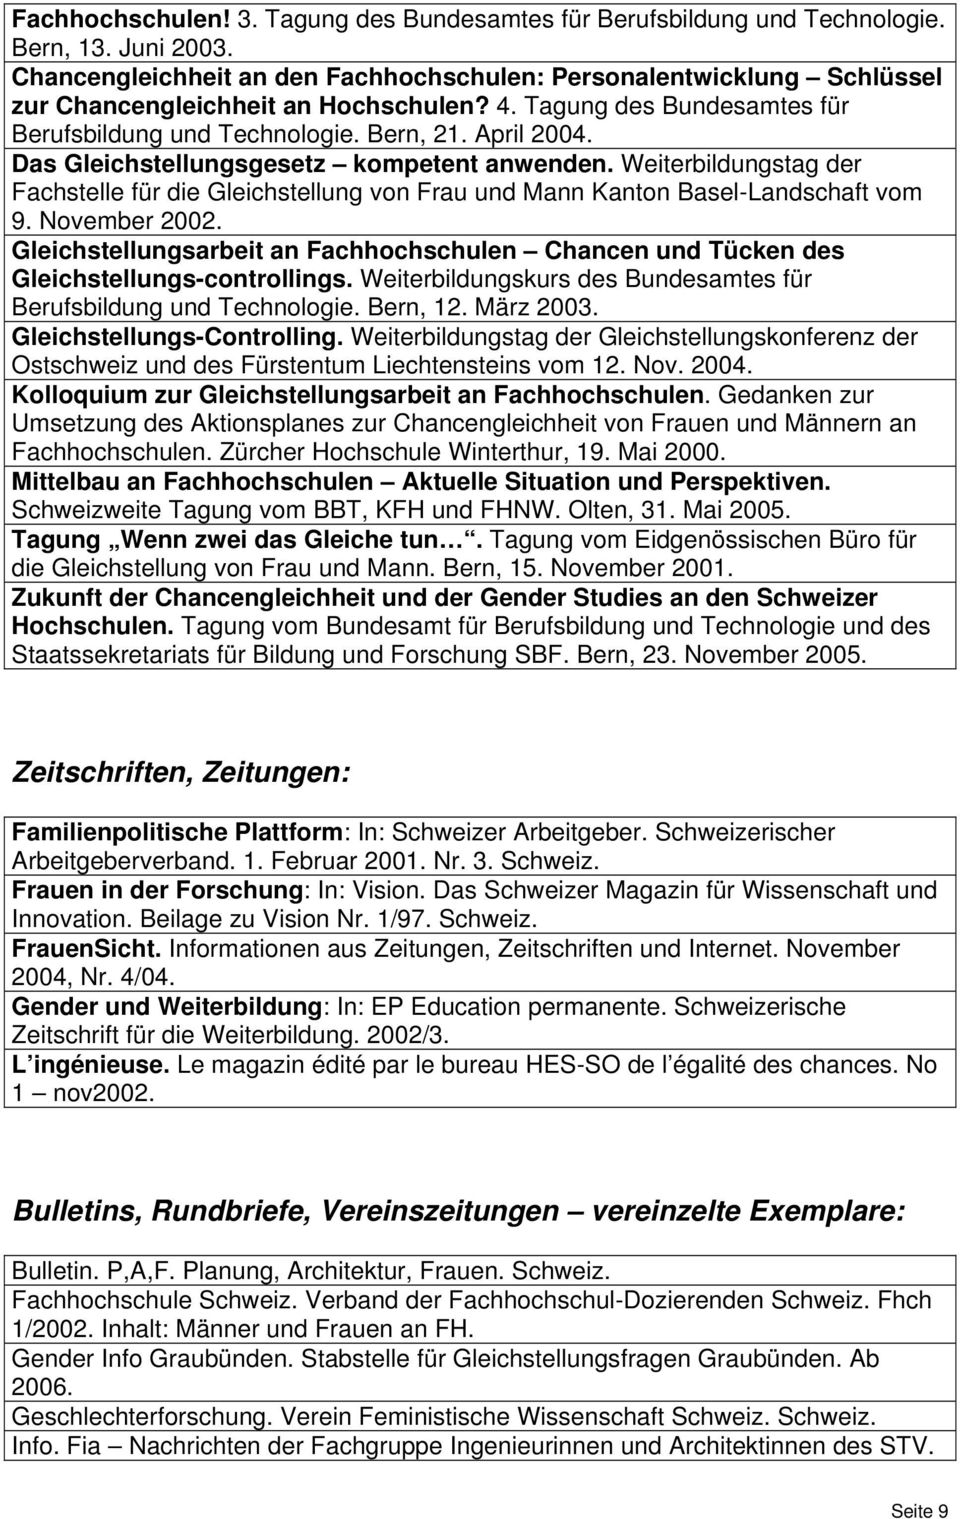 Das Gleichstellungsgesetz kompetent anwenden. Weiterbildungstag der Fachstelle für die Gleichstellung von Frau und Mann Kanton Basel-Landschaft vom 9. November 2002.